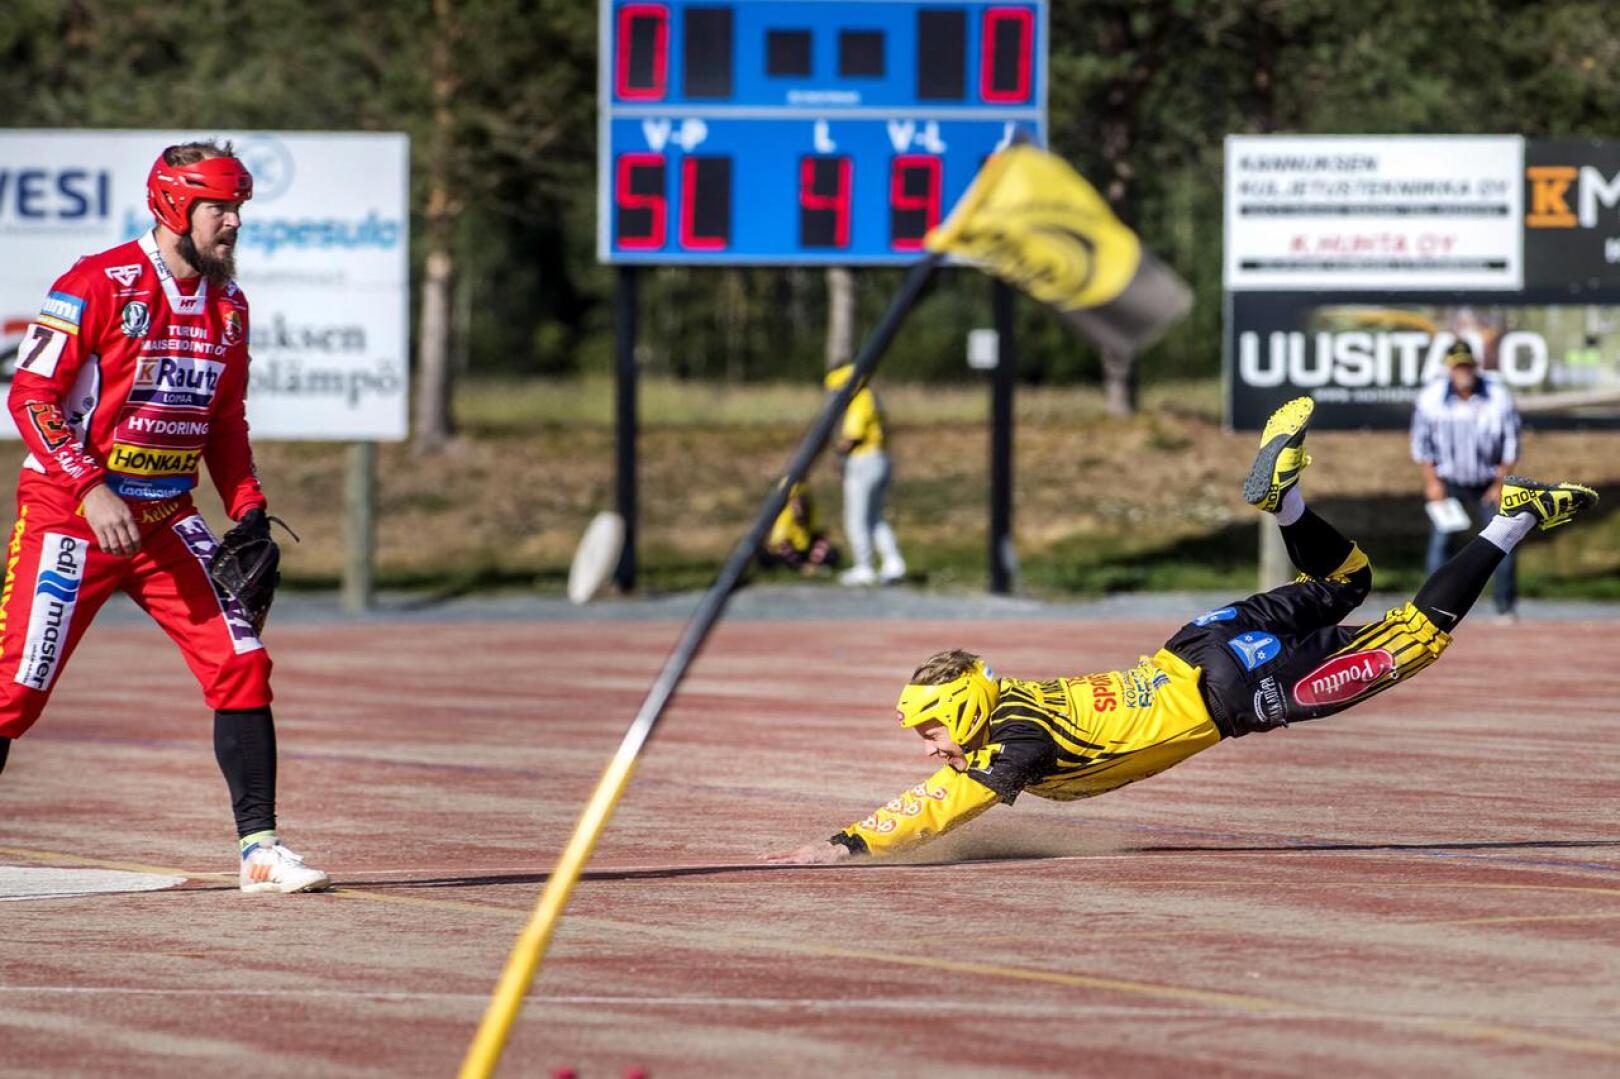 Ylivieska ja Kannus putosivat kauden päätteeksi ykköspesiksestä. Pöytyä luopui nyt paikastaan maan toiseksi korkeimmalla tasolla. Kuva viime kesän Kannus-Pöytyä -ottelusta.